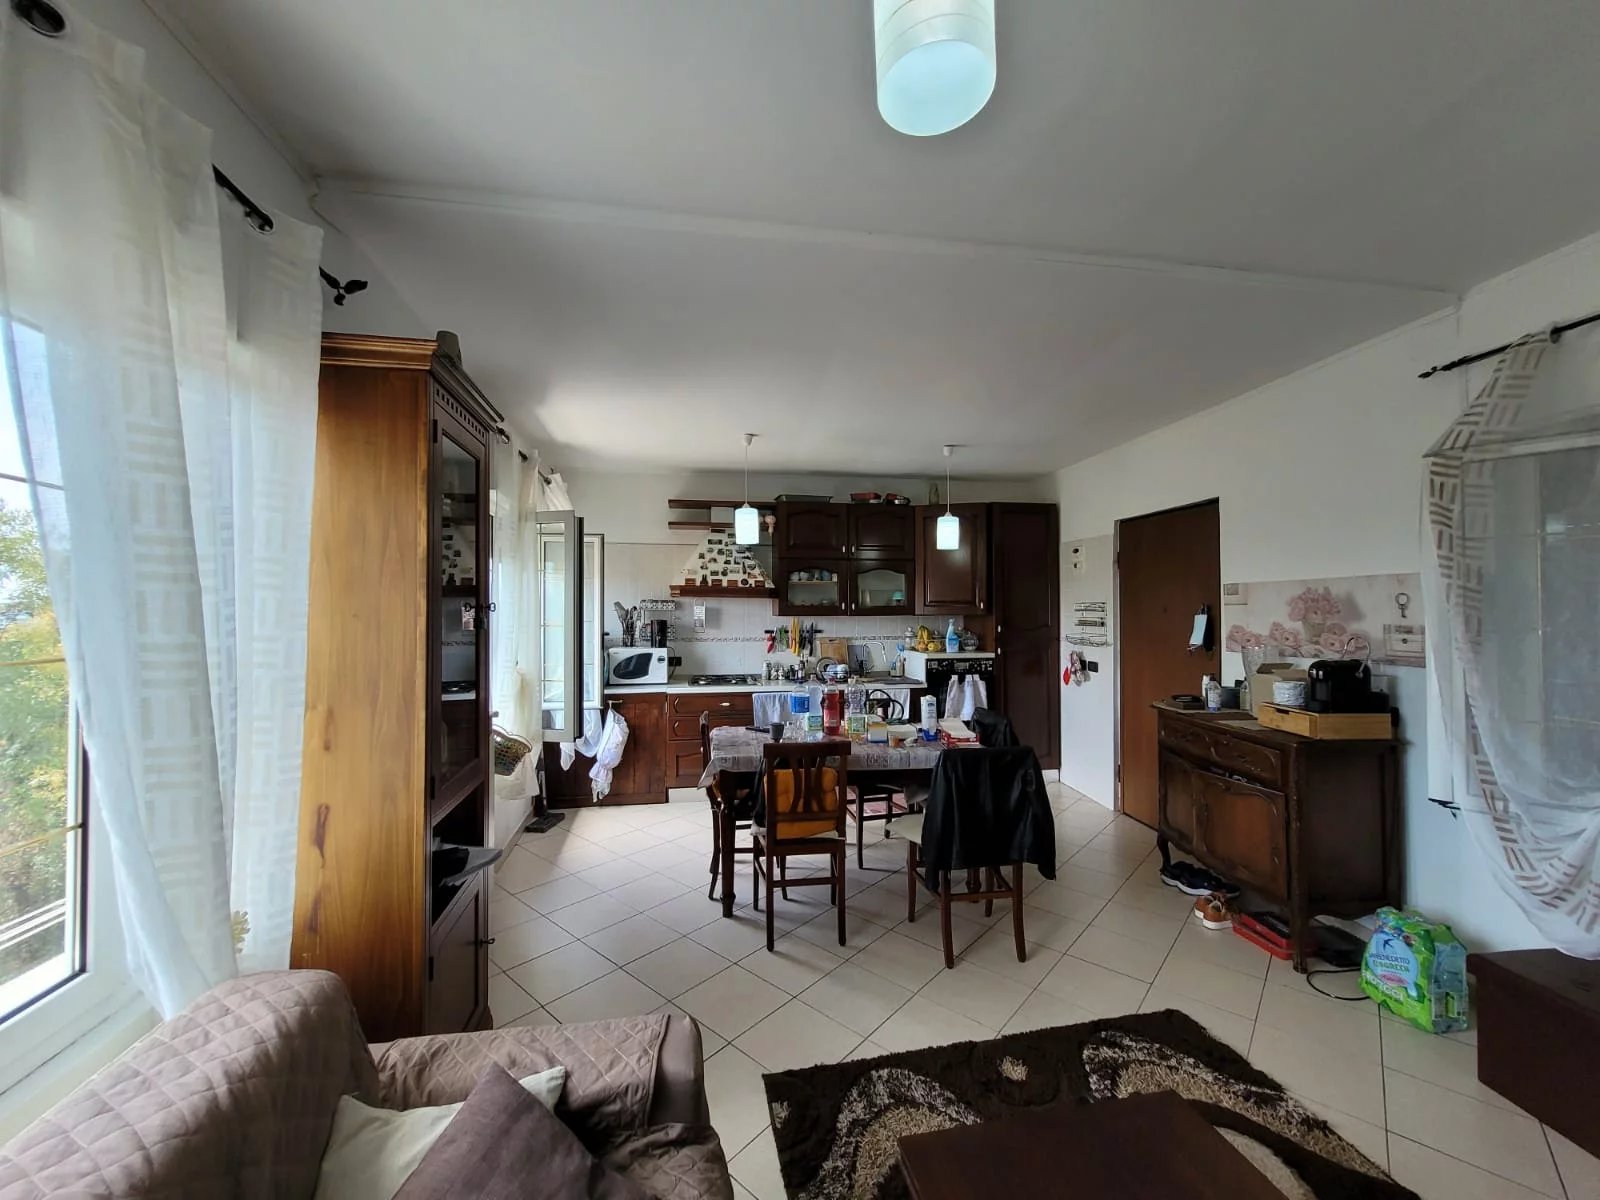 Sale Apartment villa - Ventimiglia - Italy